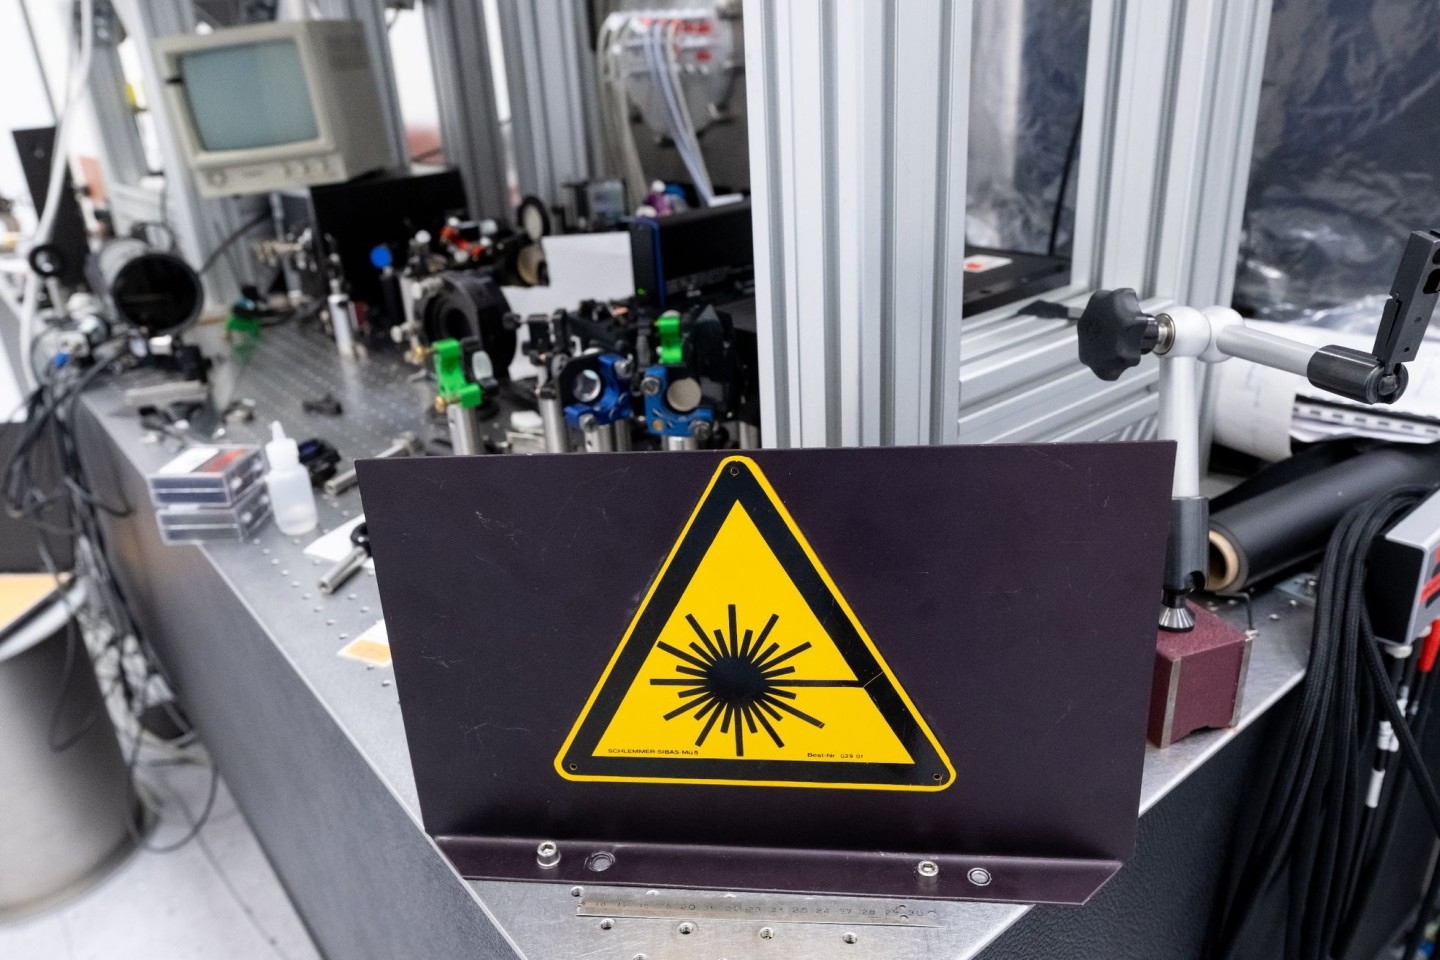 Ein Versuchsaufbau am Laser ATLAS-3000 am Center for Advanced Laser Applications (CALA) der Ludwig-Maximilians-Universität während der Unterzeichnung einer Kooperationsvereinbarung zwische...